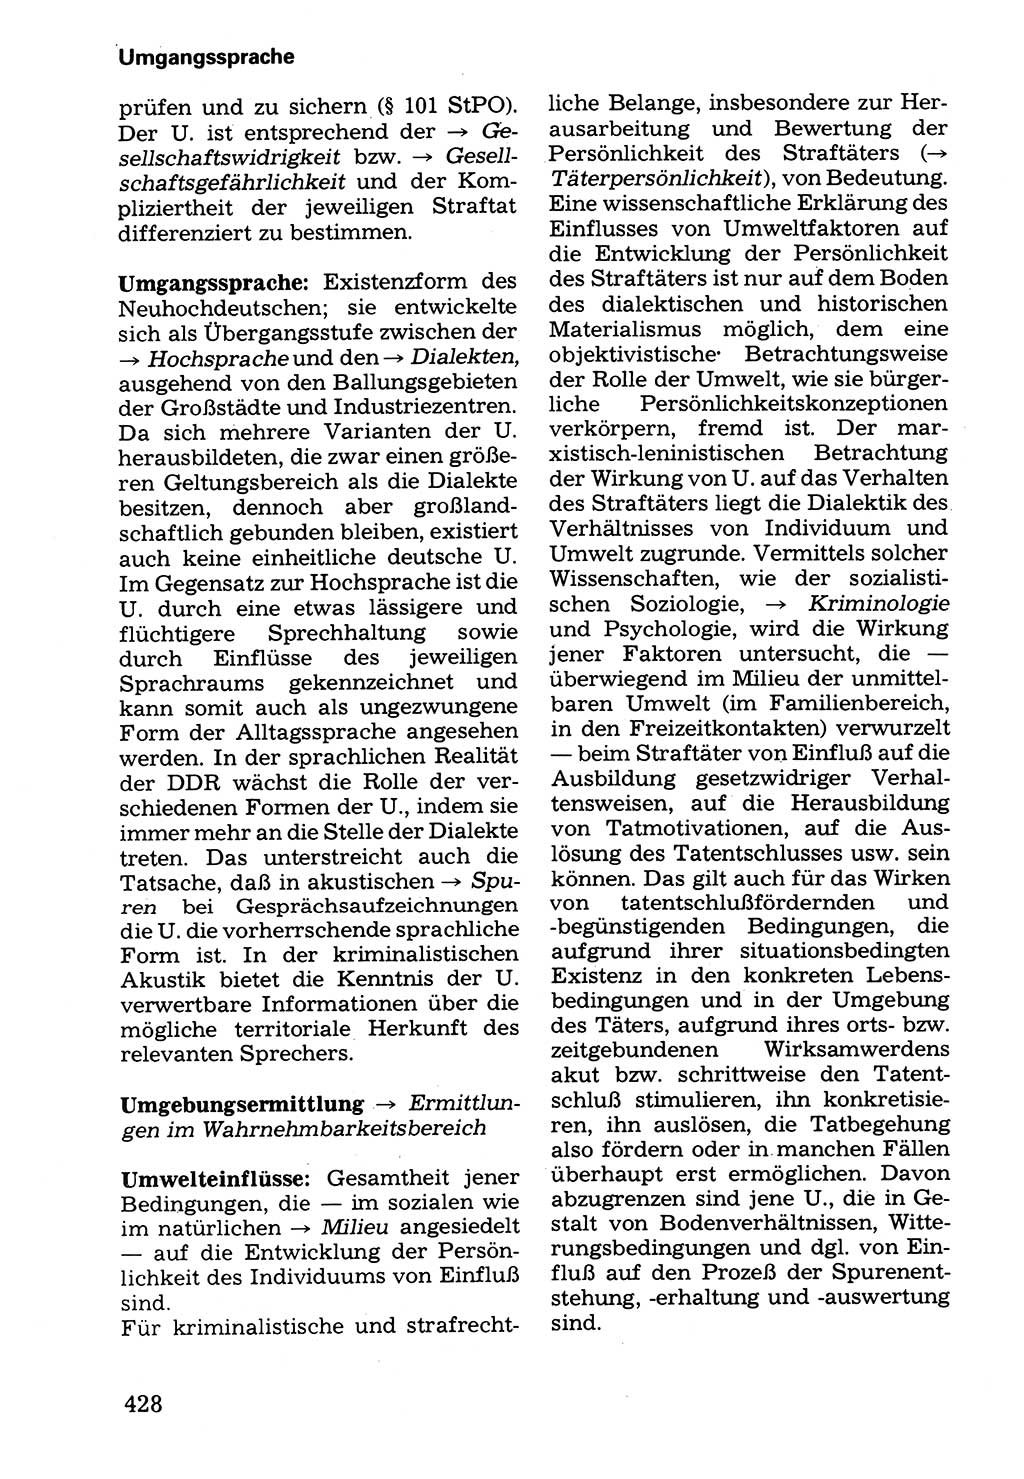 Wörterbuch der sozialistischen Kriminalistik [Deutsche Demokratische Republik (DDR)] 1981, Seite 428 (Wb. soz. Krim. DDR 1981, S. 428)